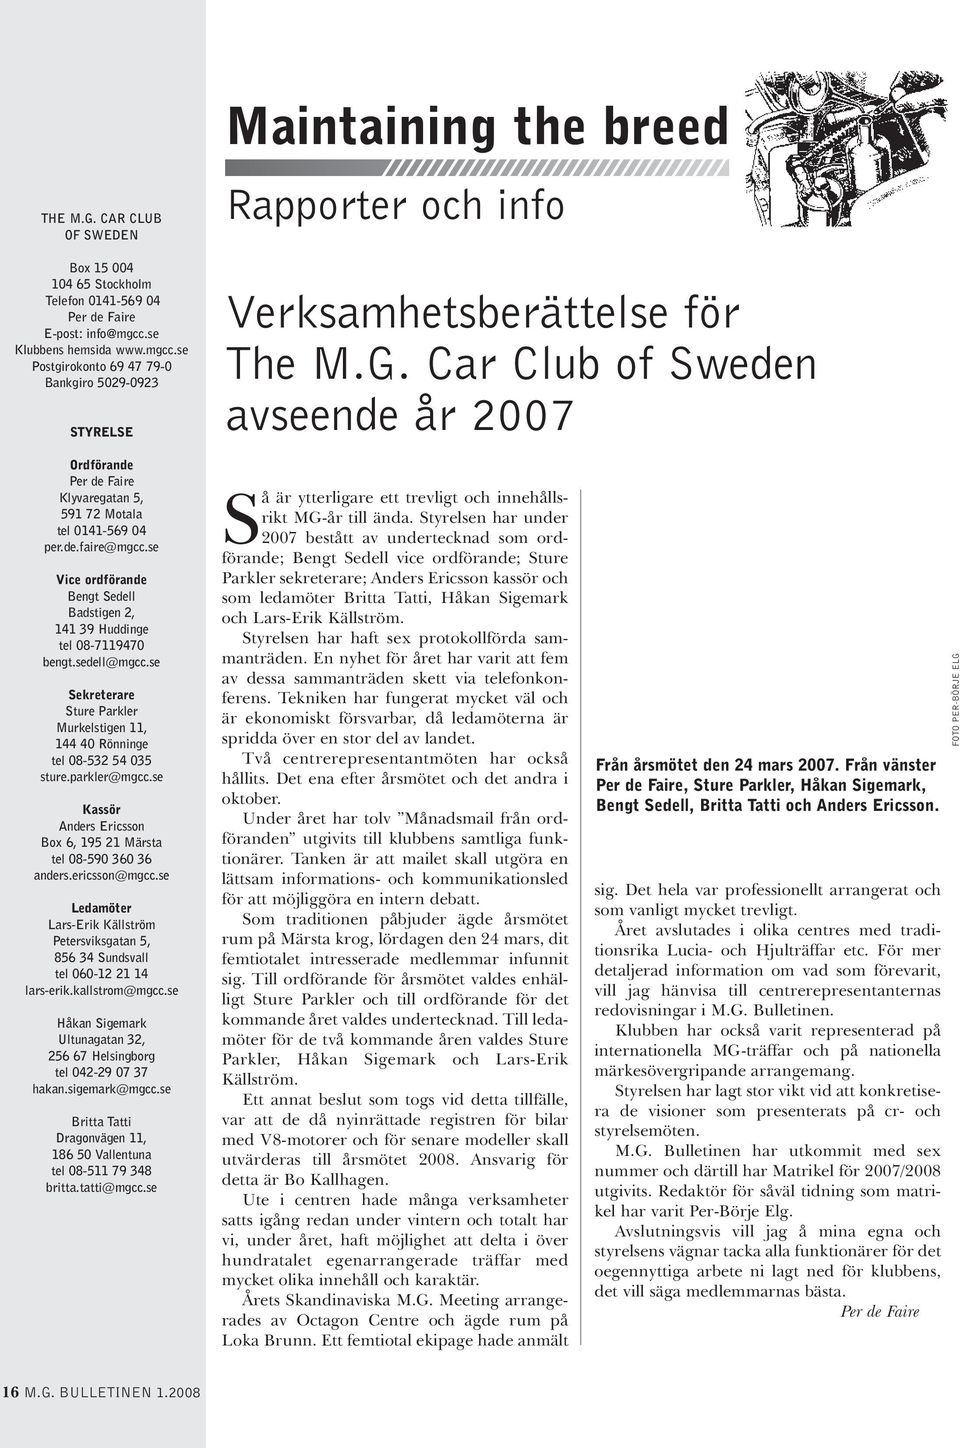 Car Club of Sweden avseende år 2007 Ordförande Per de Faire Klyvaregatan 5, 591 72 Motala tel 0141-569 04 per.de.faire@mgcc.